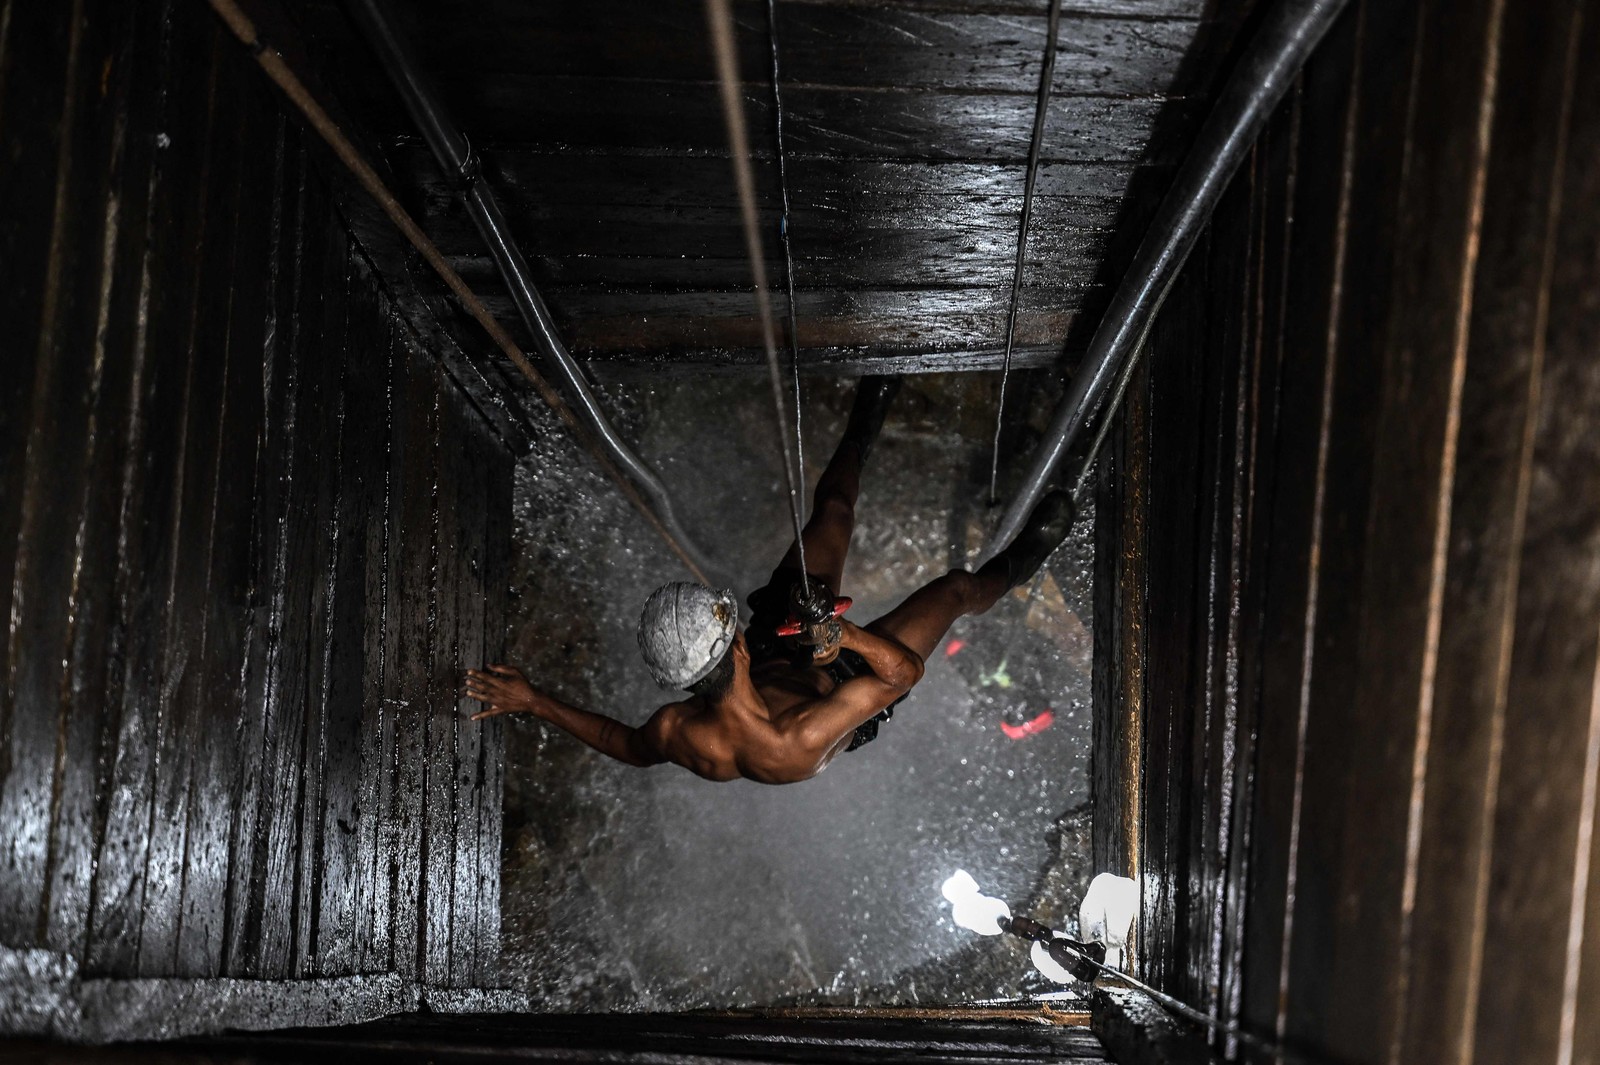  Um mineirador trabalha em uma mina ilegal de cobre, em Canaã dos Carajás. A cidade expandiu muito nos últimos anos graças a mineração. — Foto:  Nelson ALMEIDA / AFP